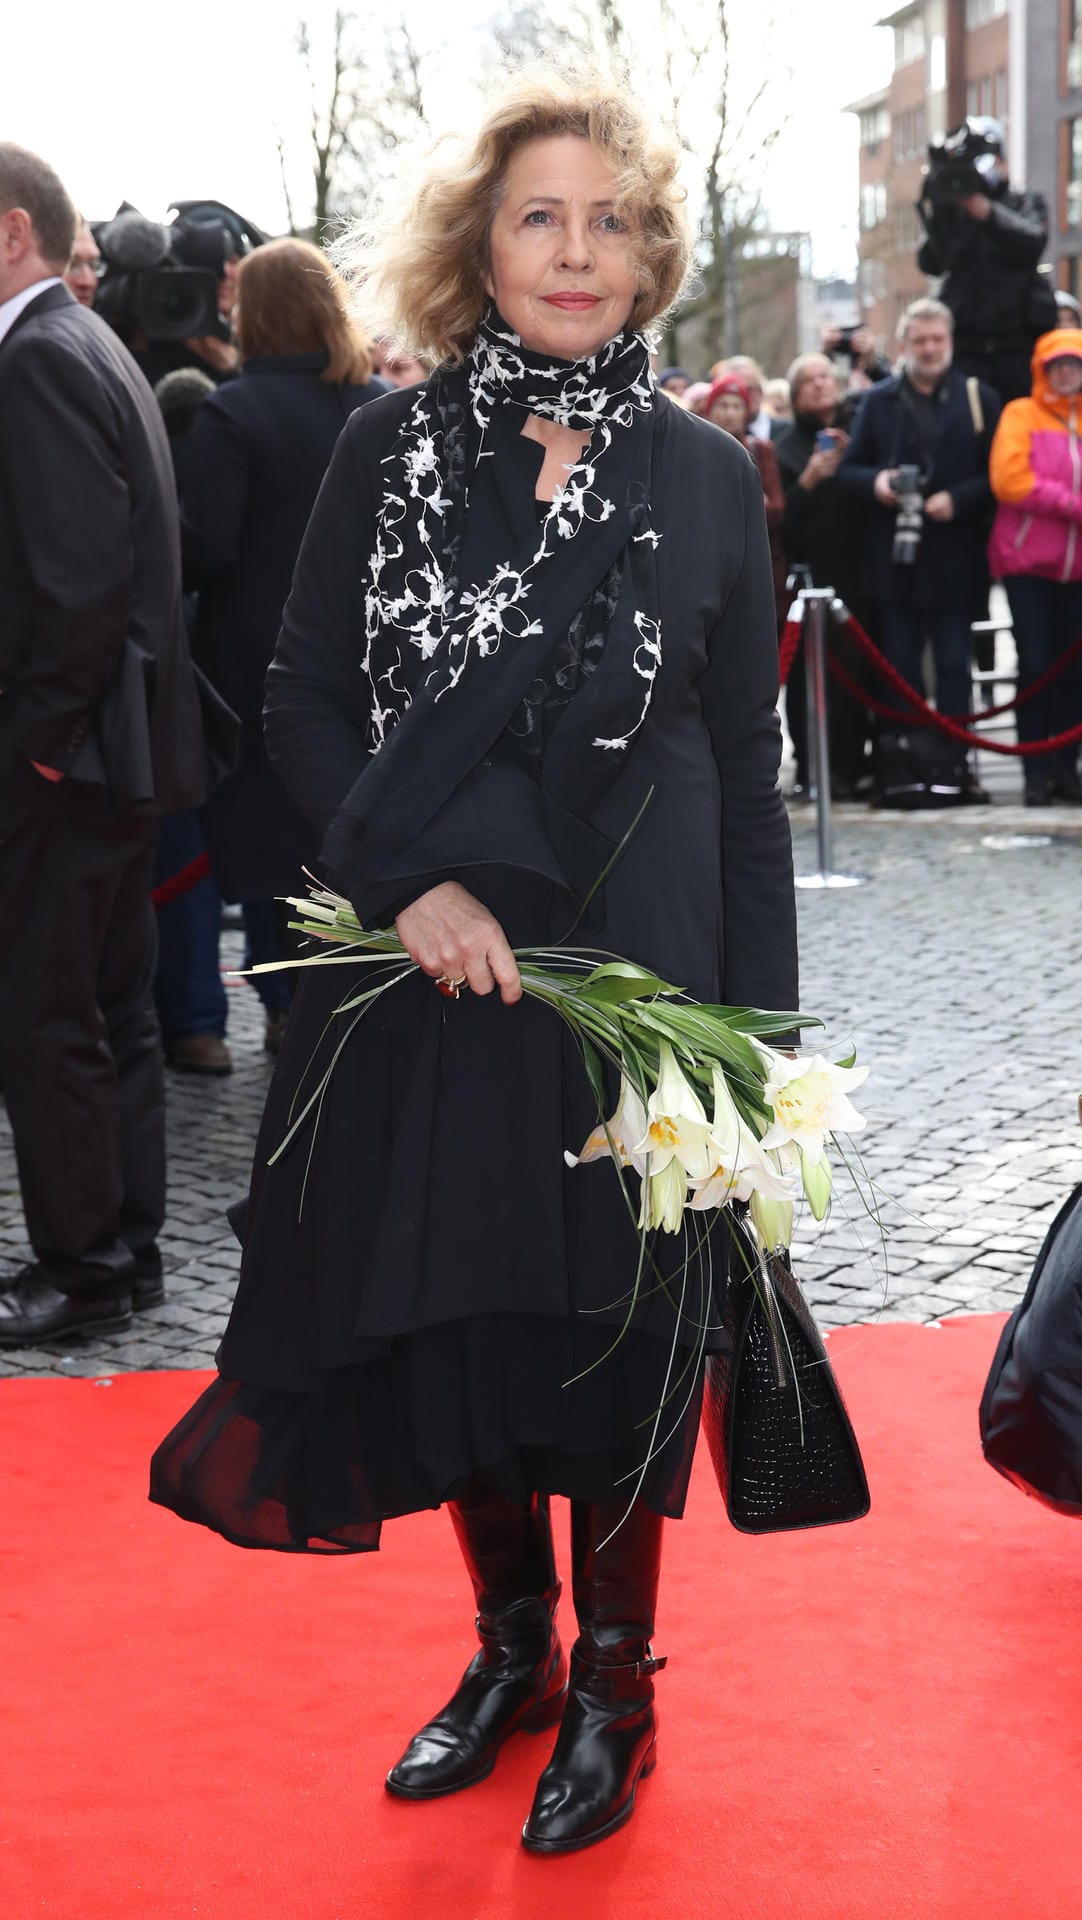 Die Schauspielerin Michaela May beim Abschied von Jan Fedder